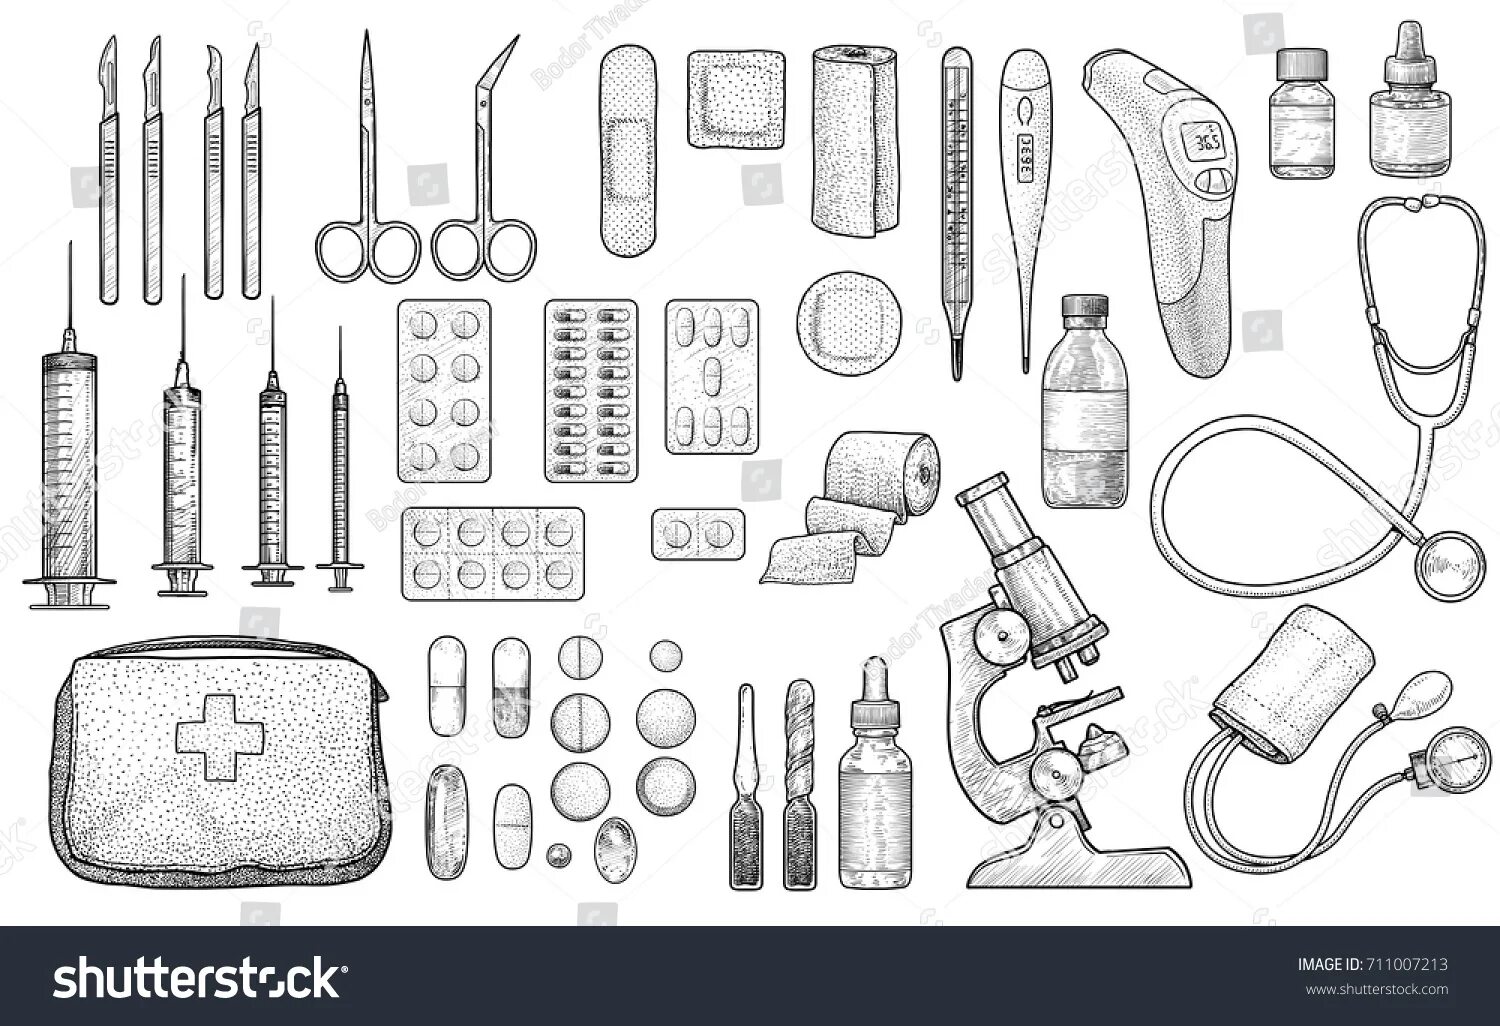 Medical instruments for children #3